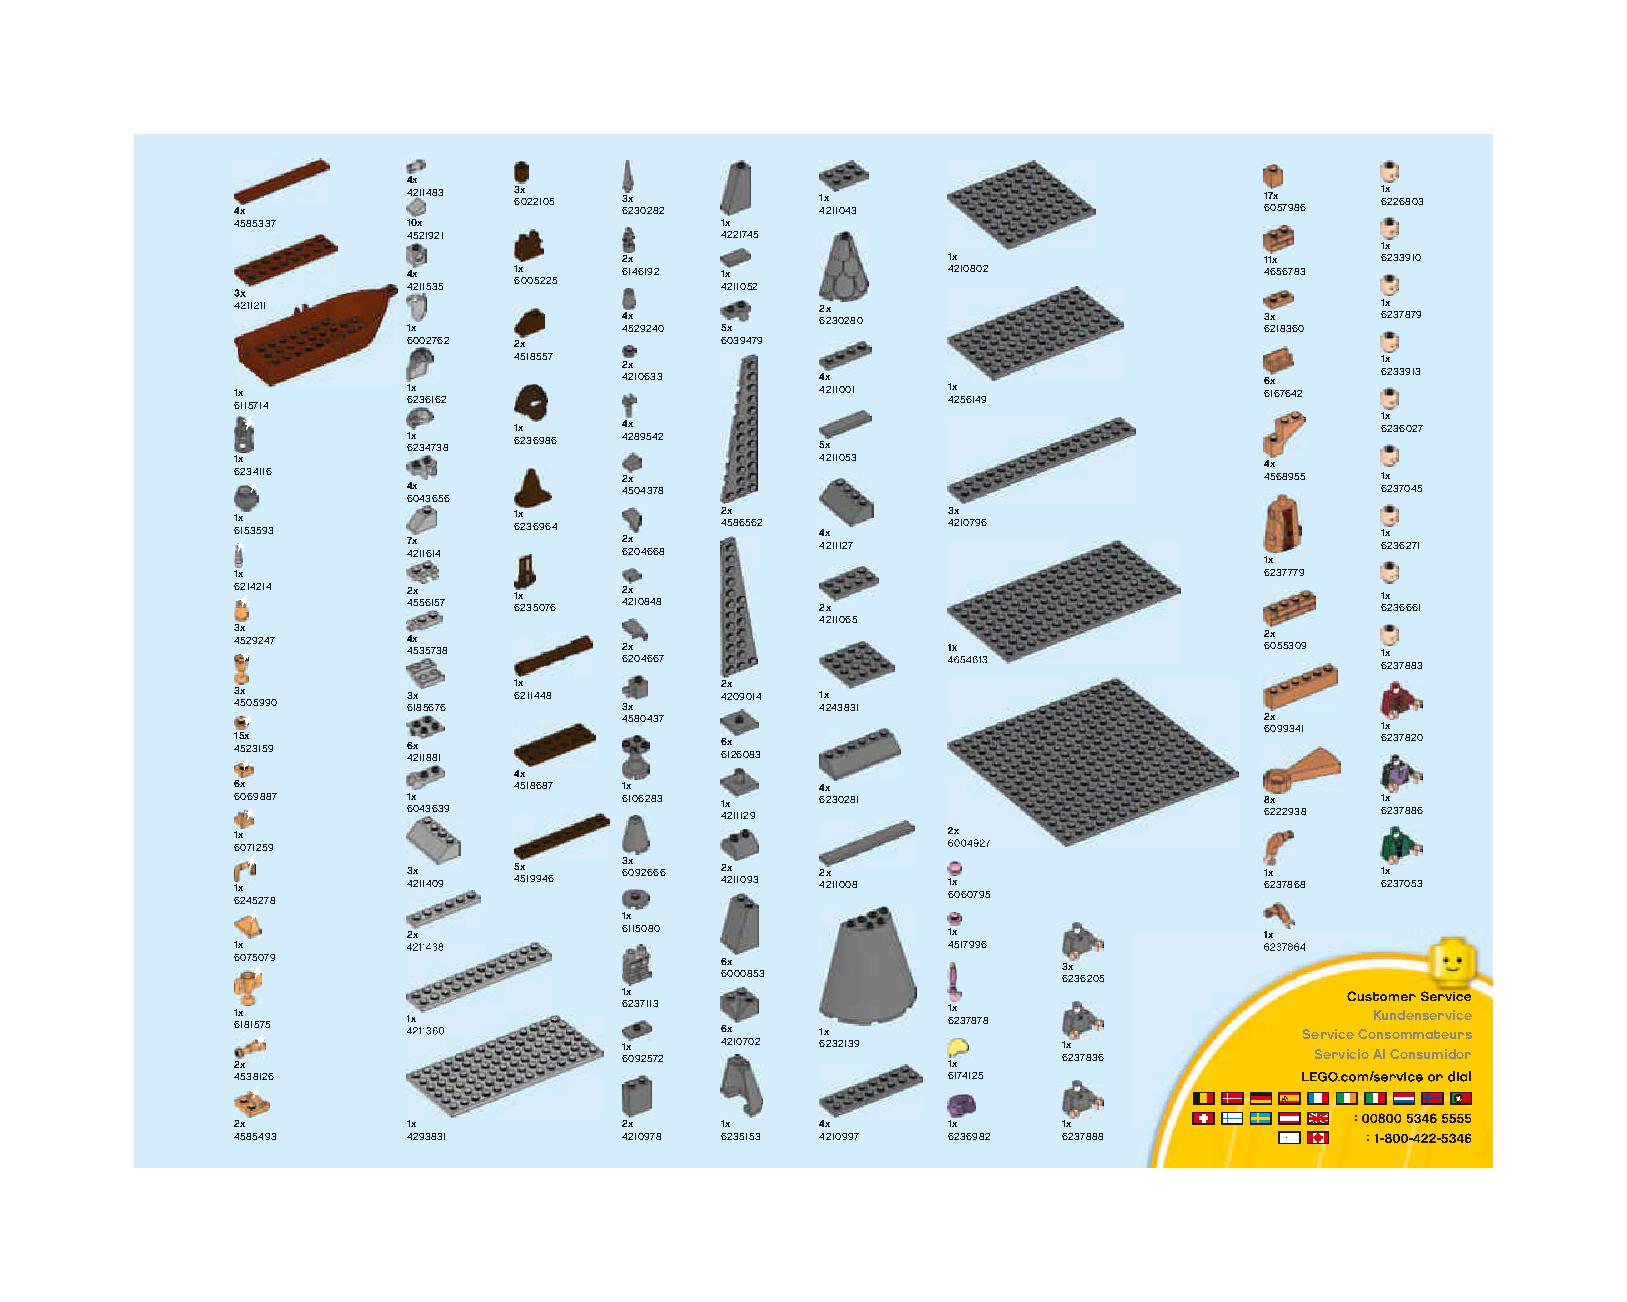 ホグワーツの大広間 75954 レゴの商品情報 レゴの説明書・組立方法 183 page